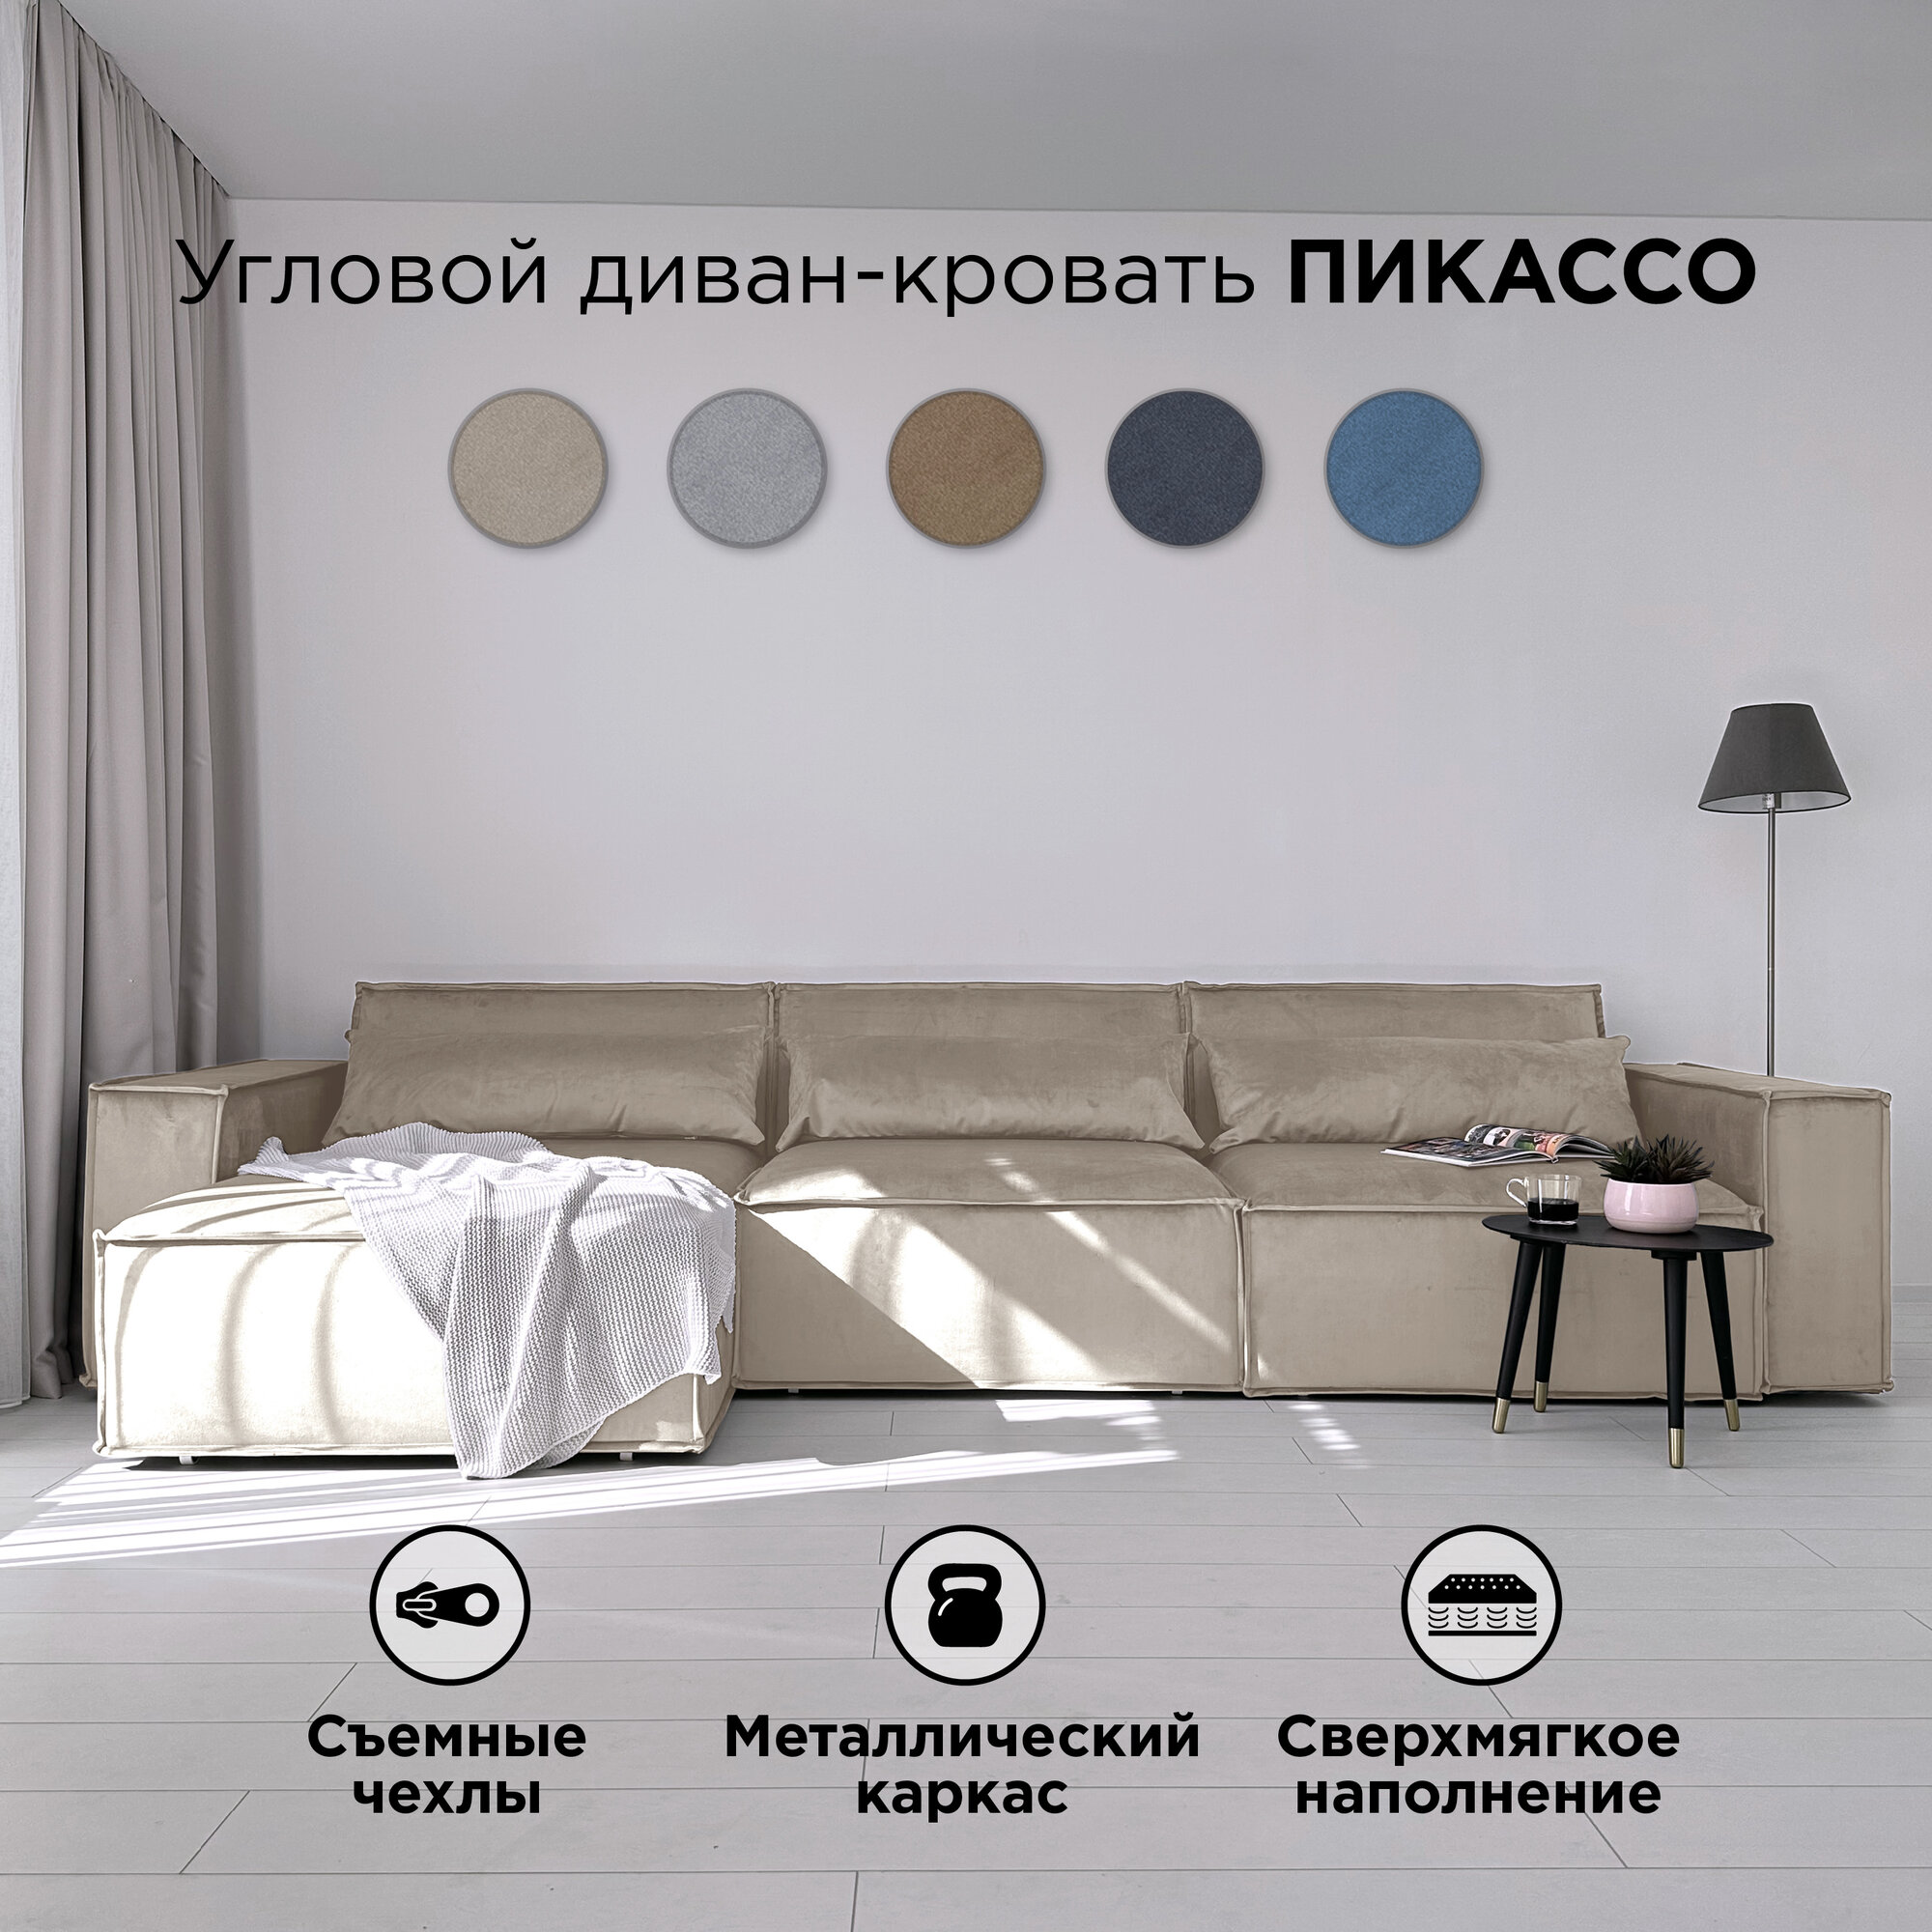 Диван-кровать Redsofa Пикассо 360 см Бежевый антивандальный. Раскладной угловой диван со съемными чехлами, для дома и офиса.